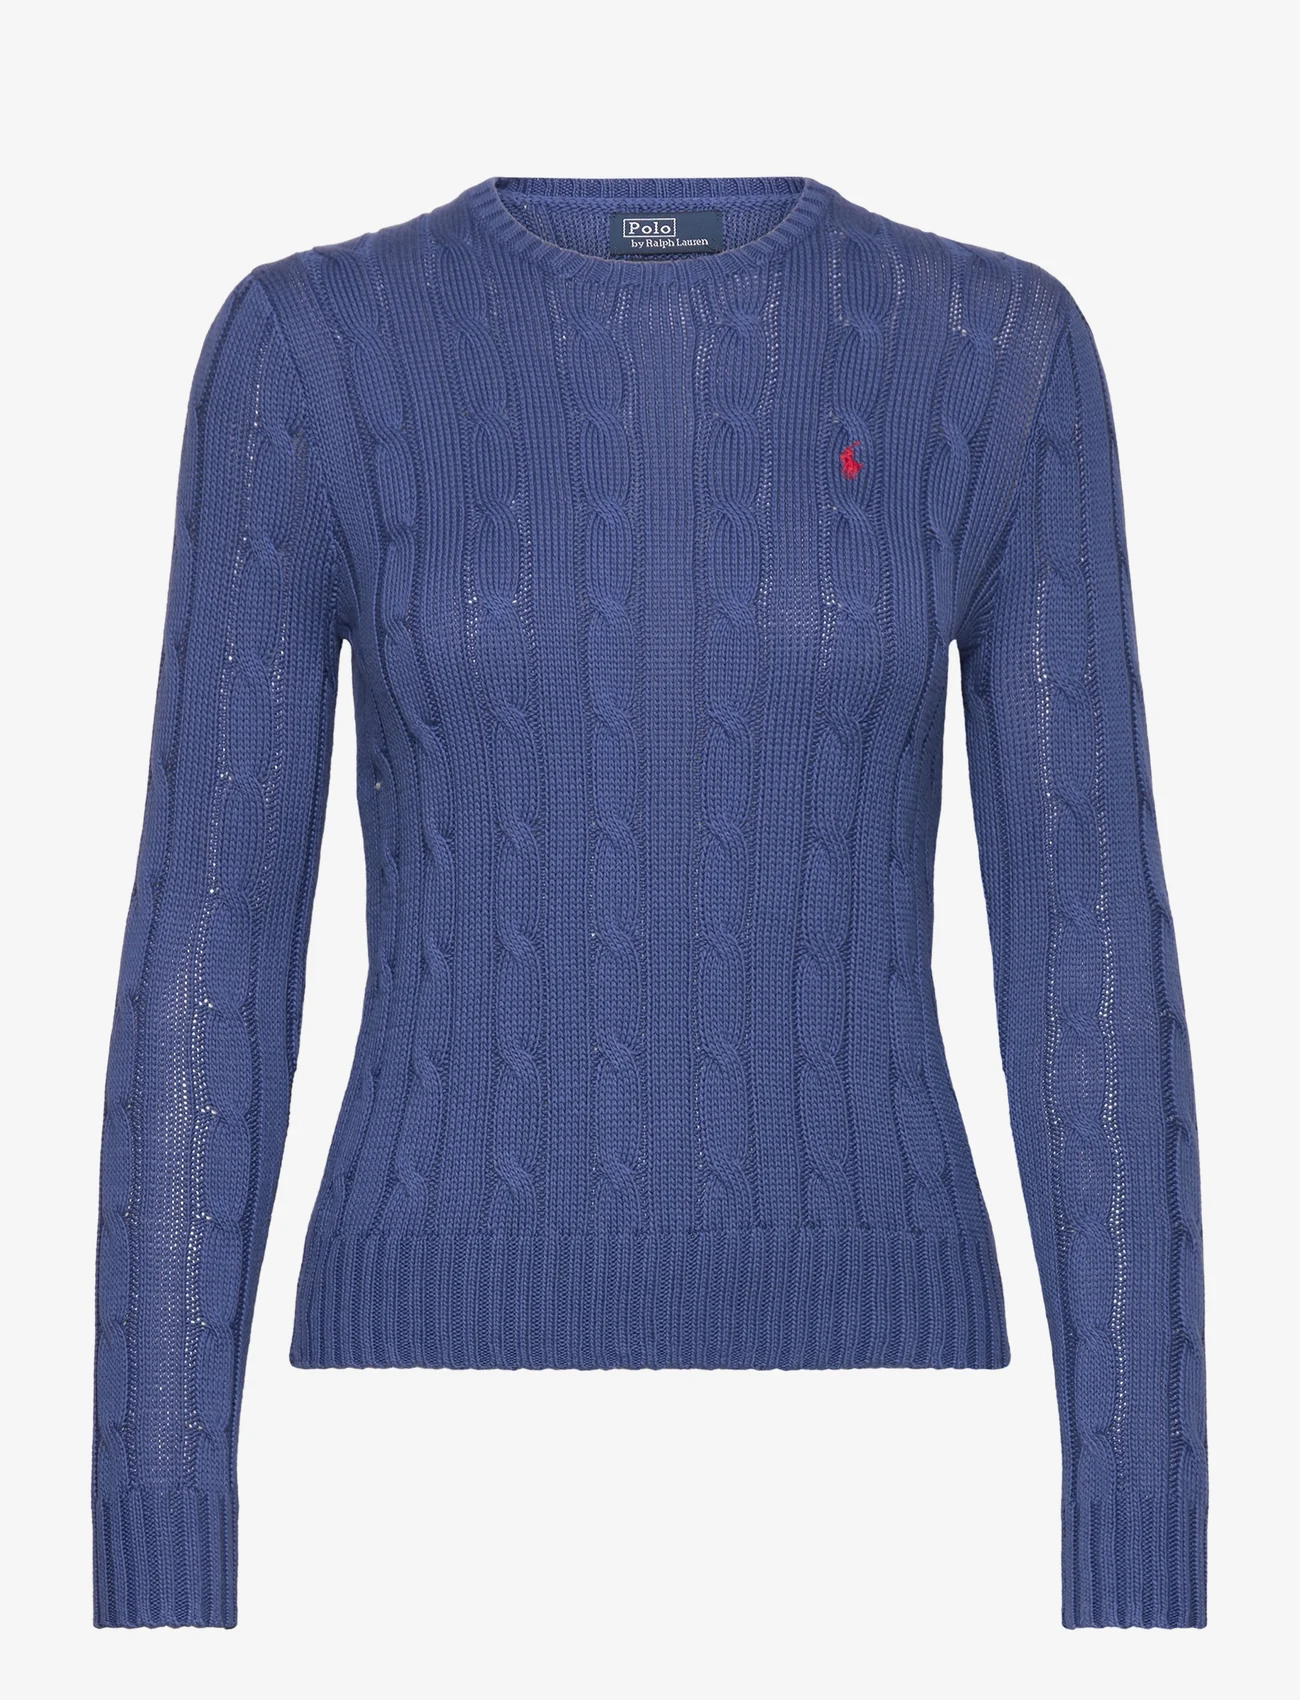 Polo Ralph Lauren - Cable-Knit Cotton Crewneck Sweater - džemperiai - gem blue - 0